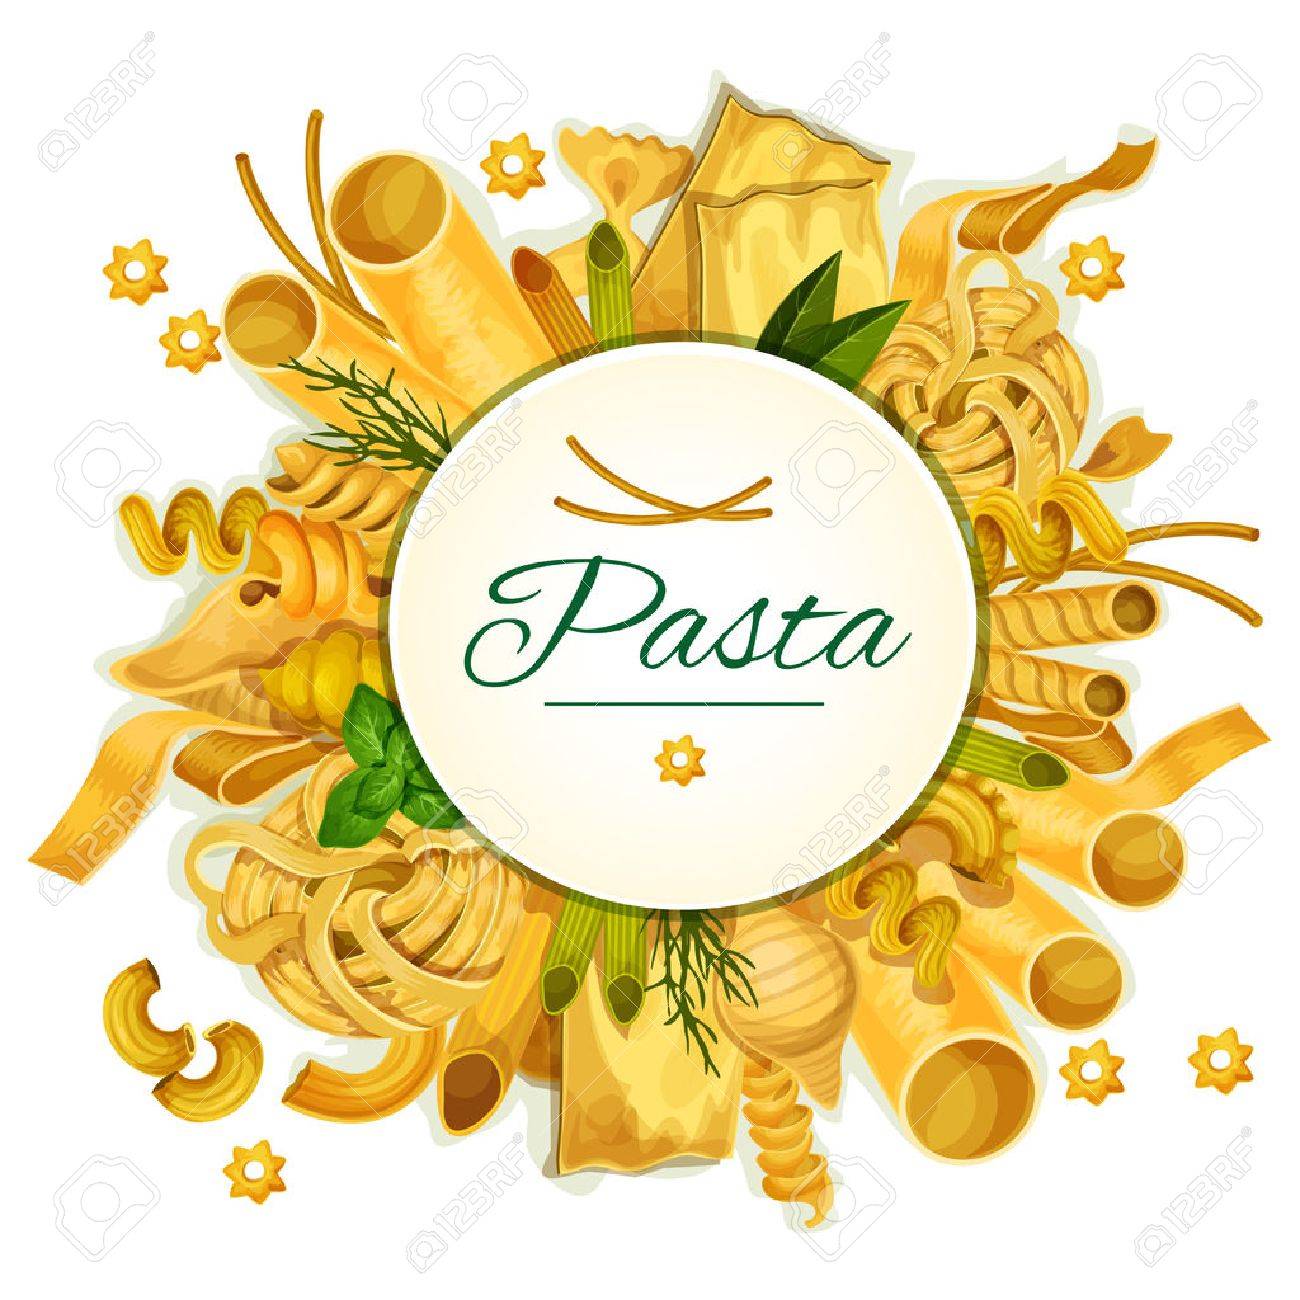 spaghetti clipart bow tie pasta